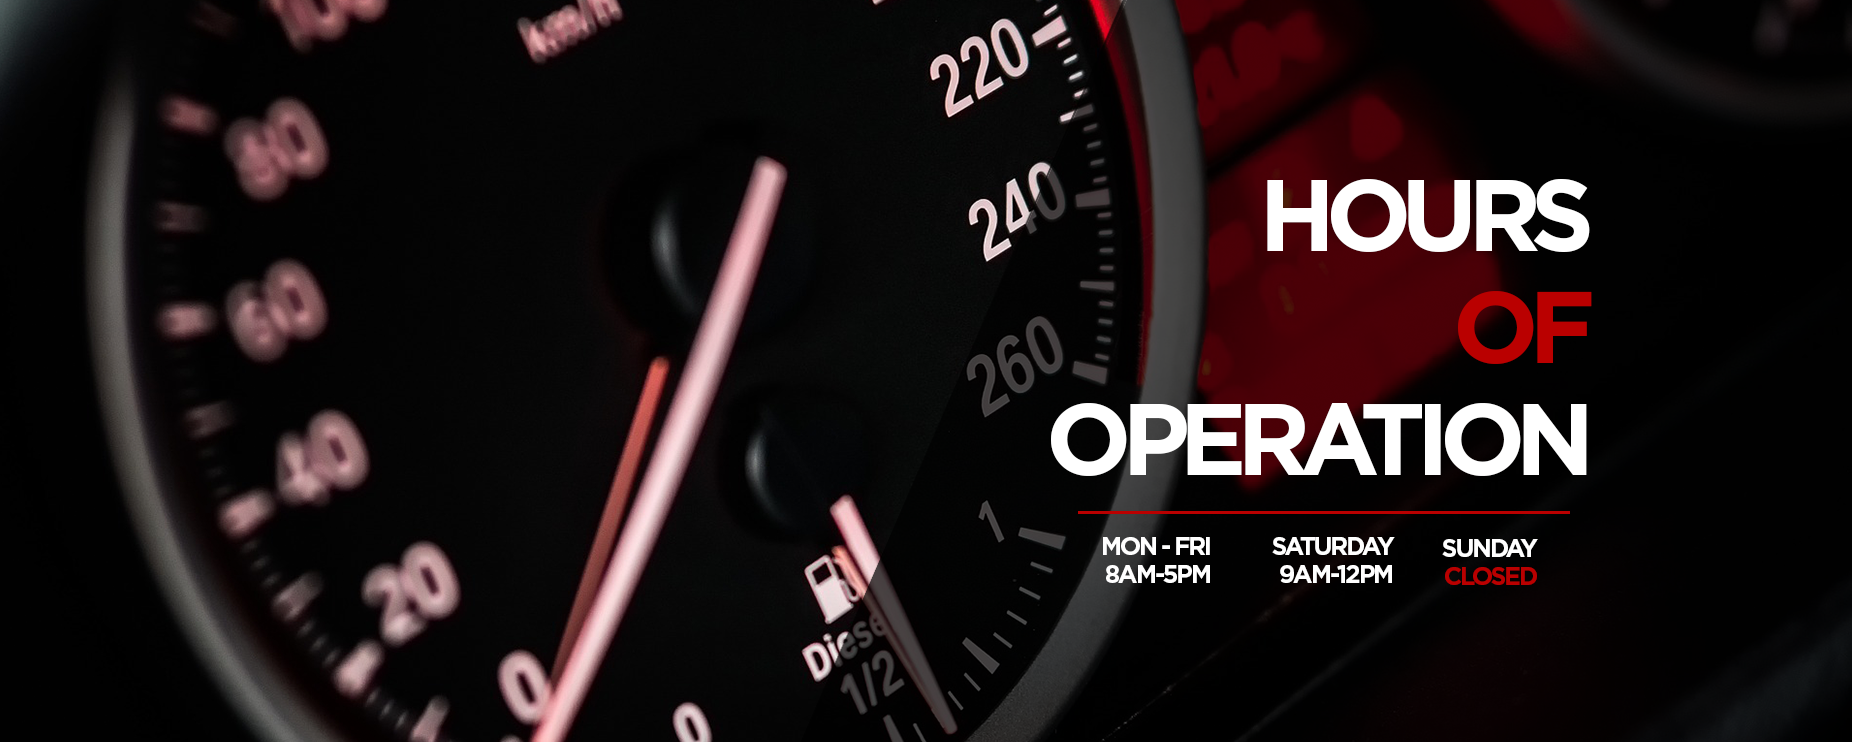 Hours of Operation Mon-Fri 8AM-5PM Sat 9AM-12PM Sun Closed Kev's Autos Howick Automotive Services Car Repair